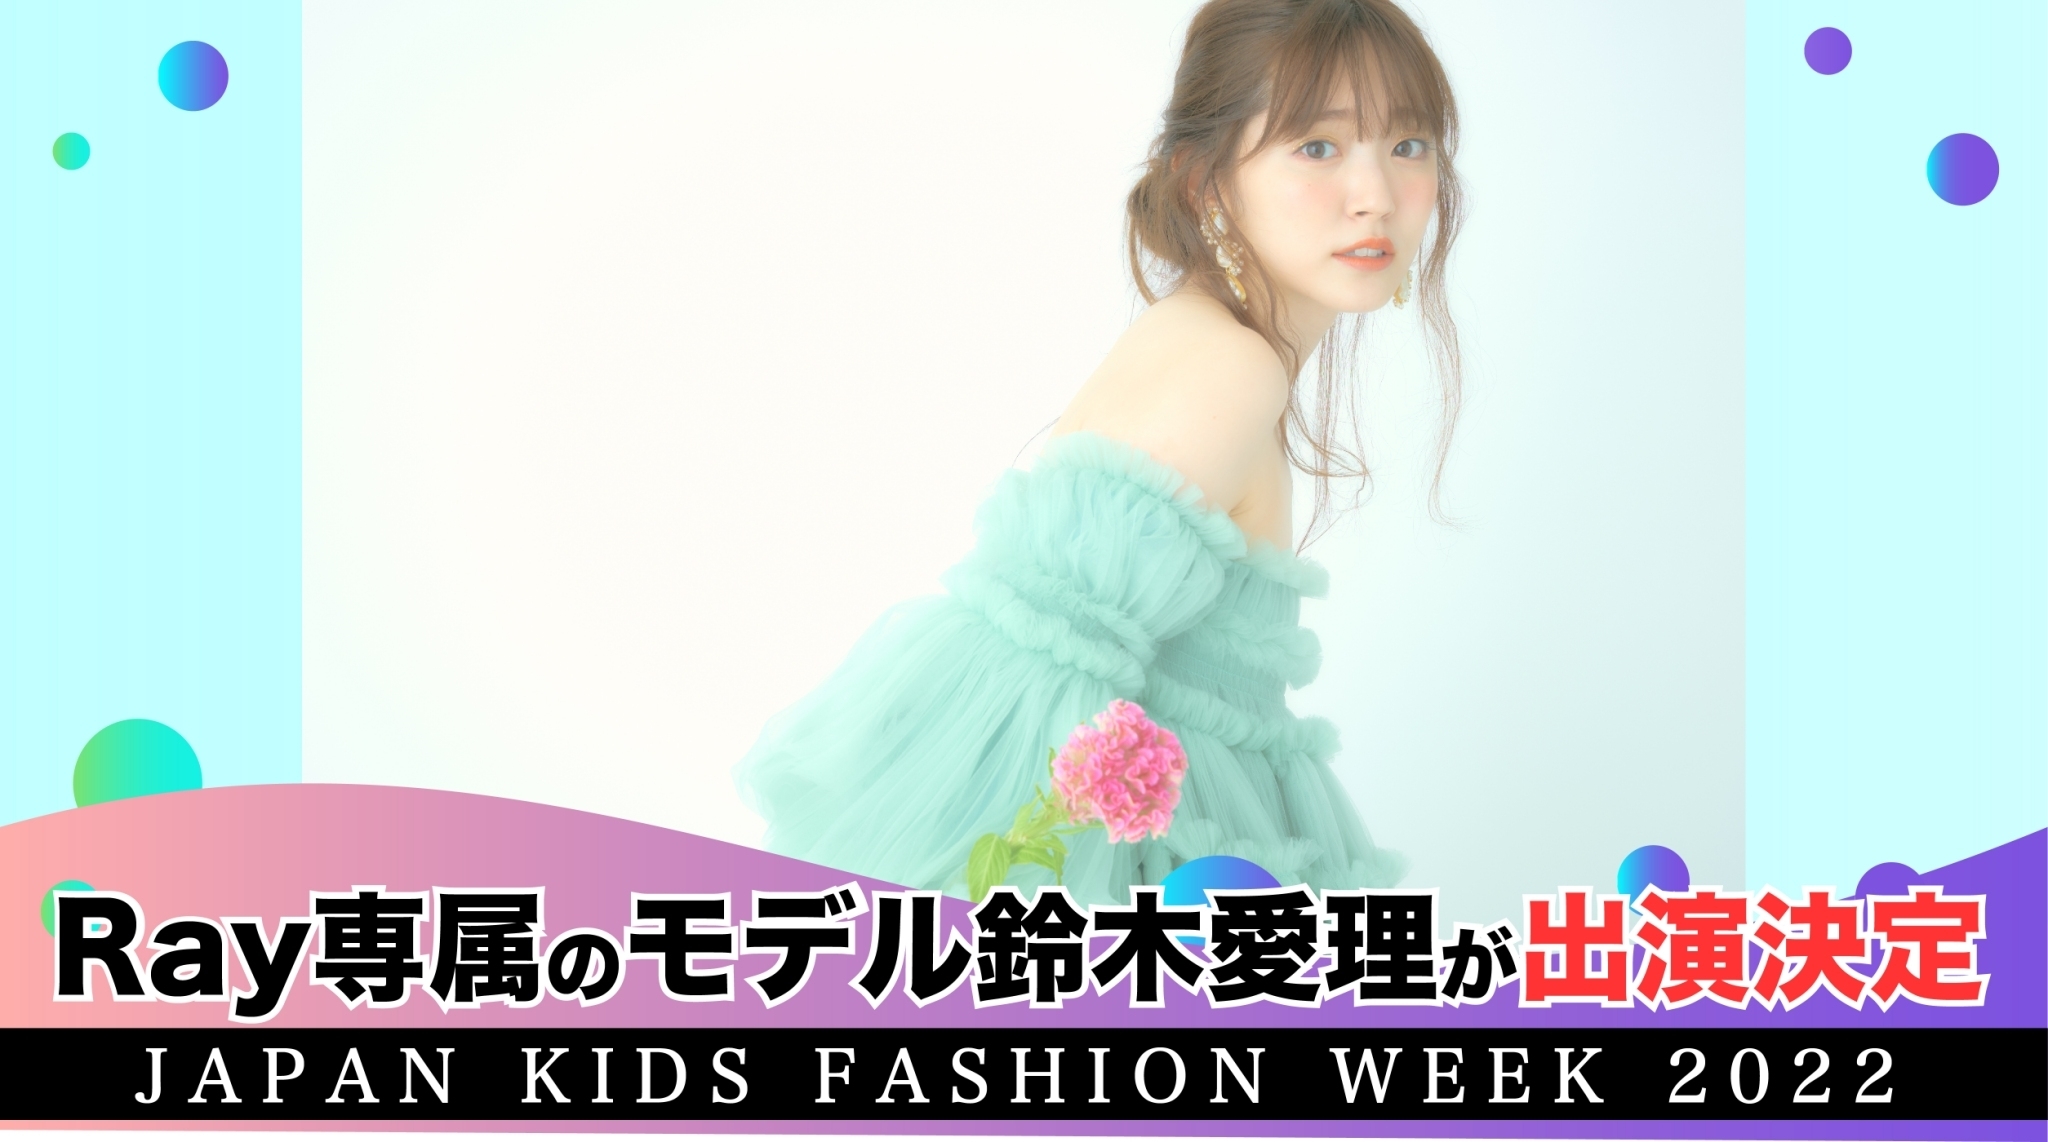 wJapan Kids Fashion Week 2022x@Rayꑮf̗؈oII